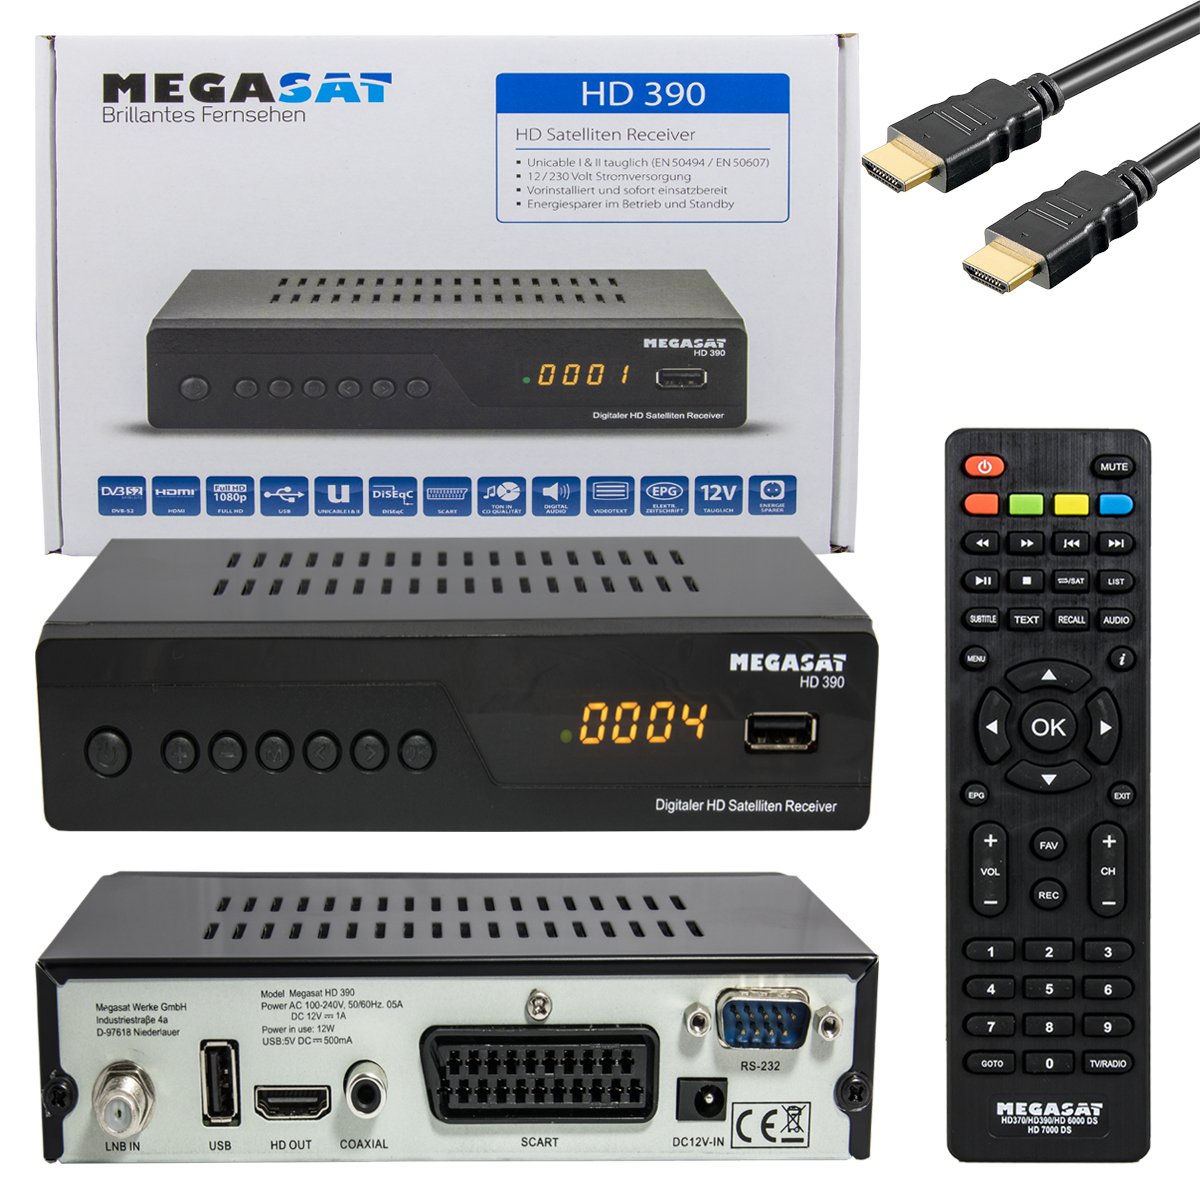 Megasat Hd 390 Satelliten Receiver mit HDMI und SCART